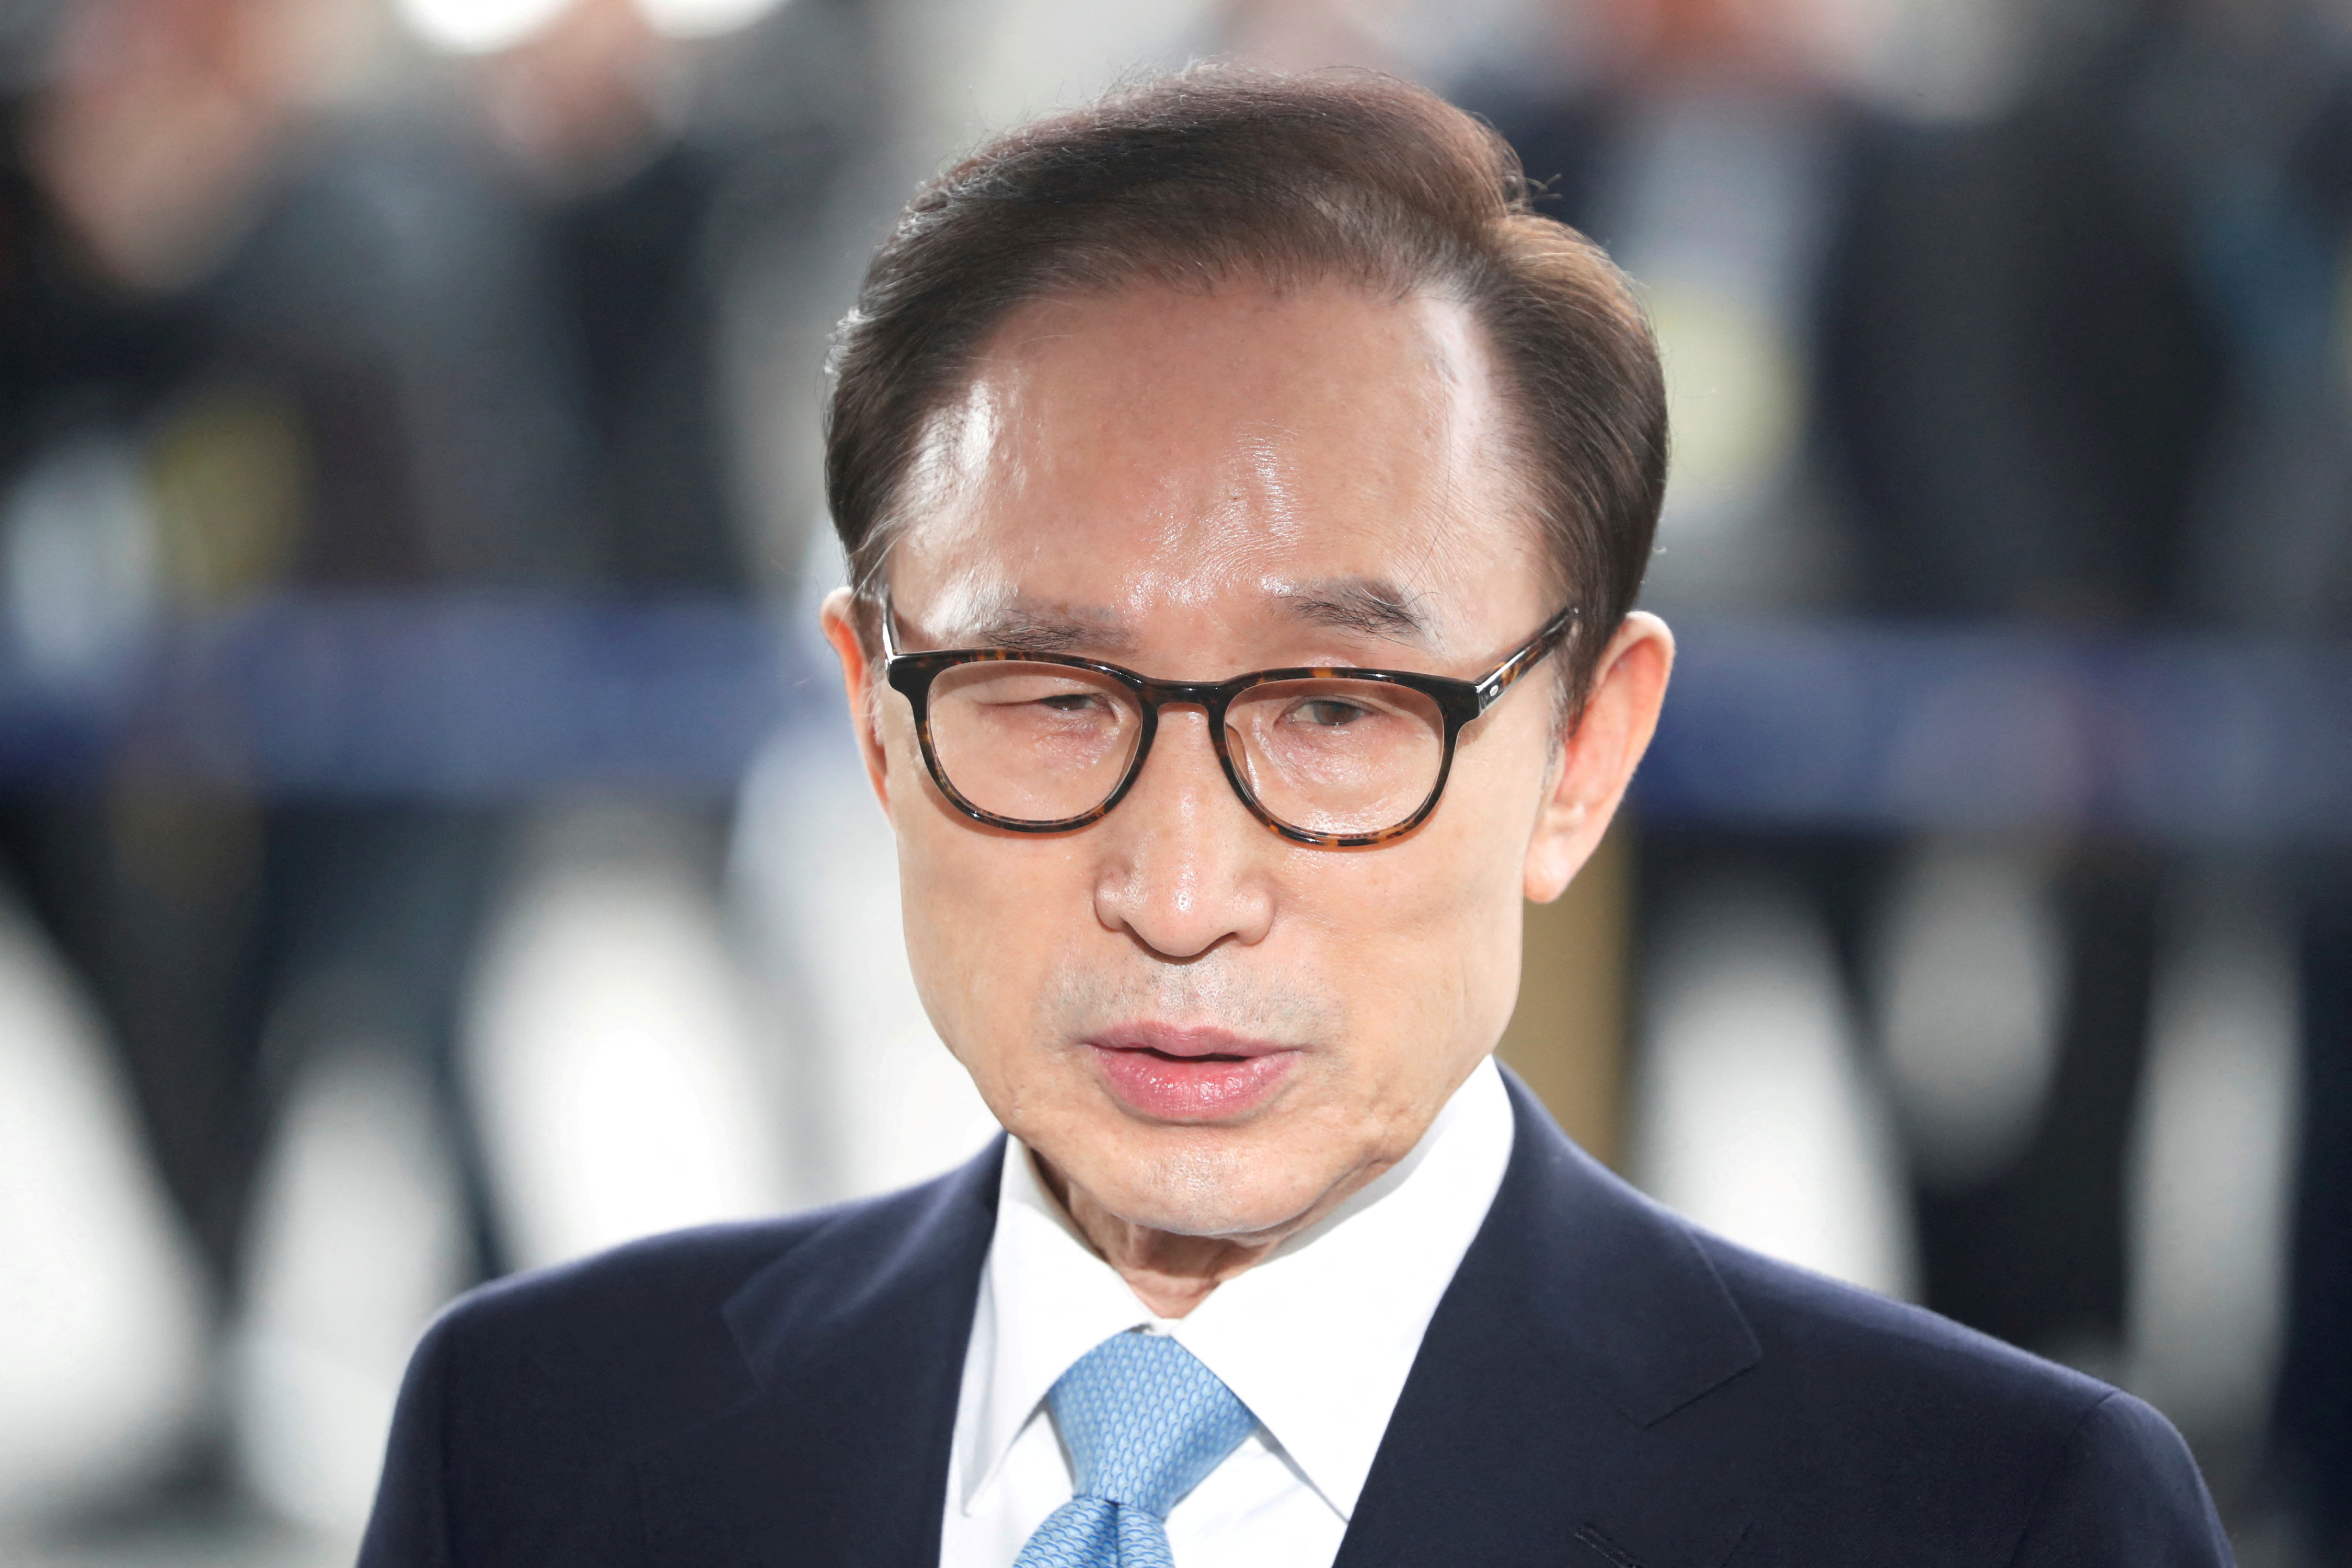 Cựu Tổng thống Hàn Quốc Lee Myung-bak được đặc xá